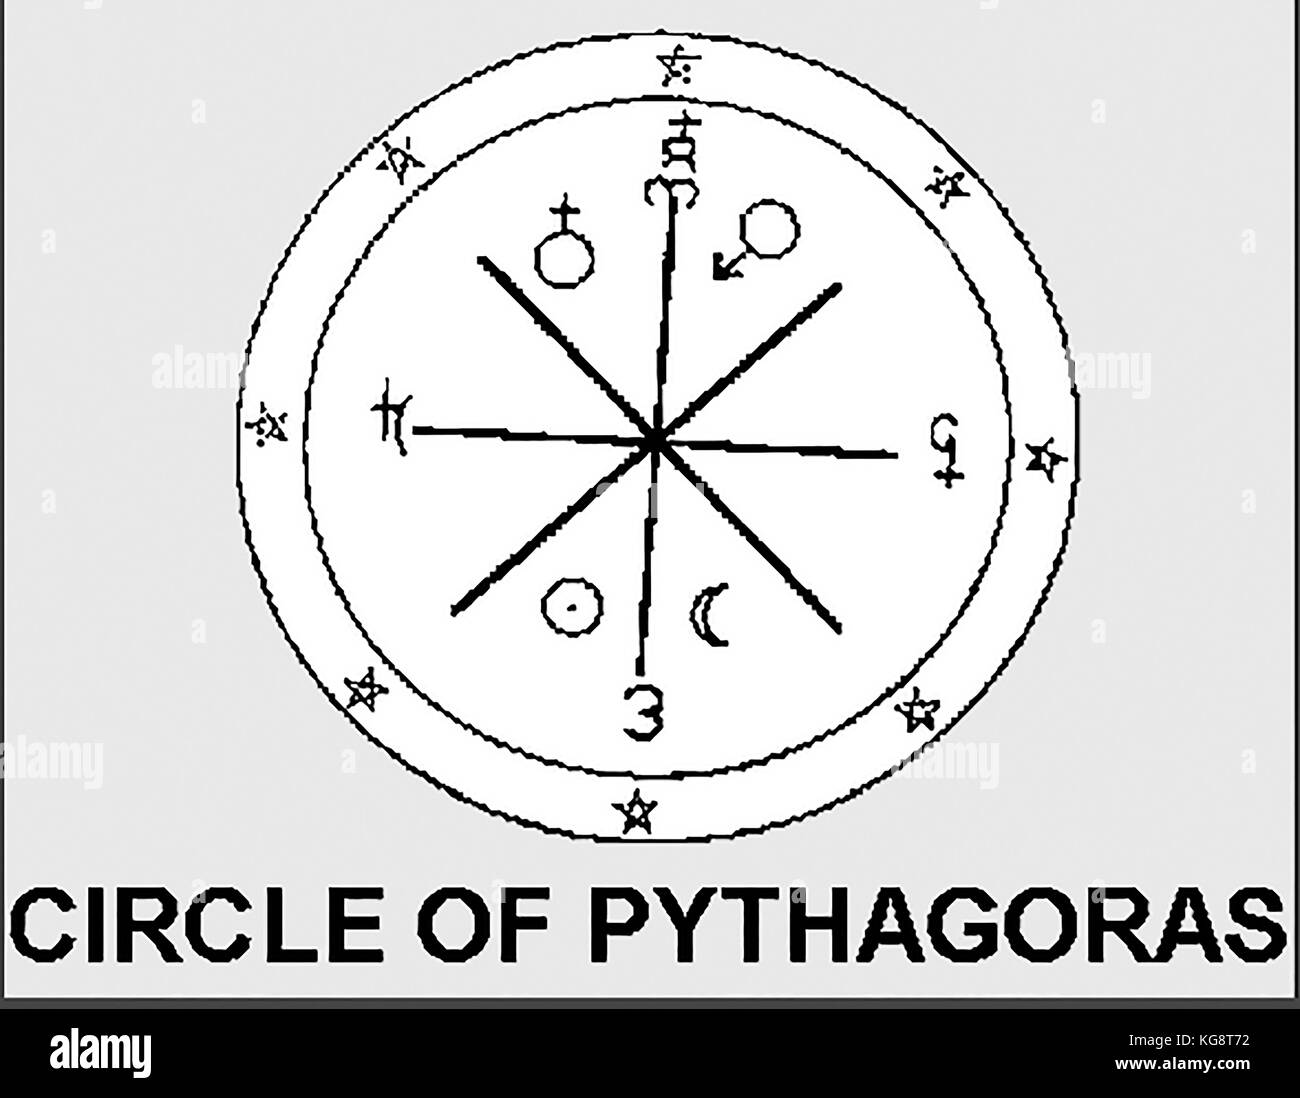 Magische Symbolik - Der Kreis der Pythagoras mit Planetengetriebe/astrologische Einflüsse Stockfoto